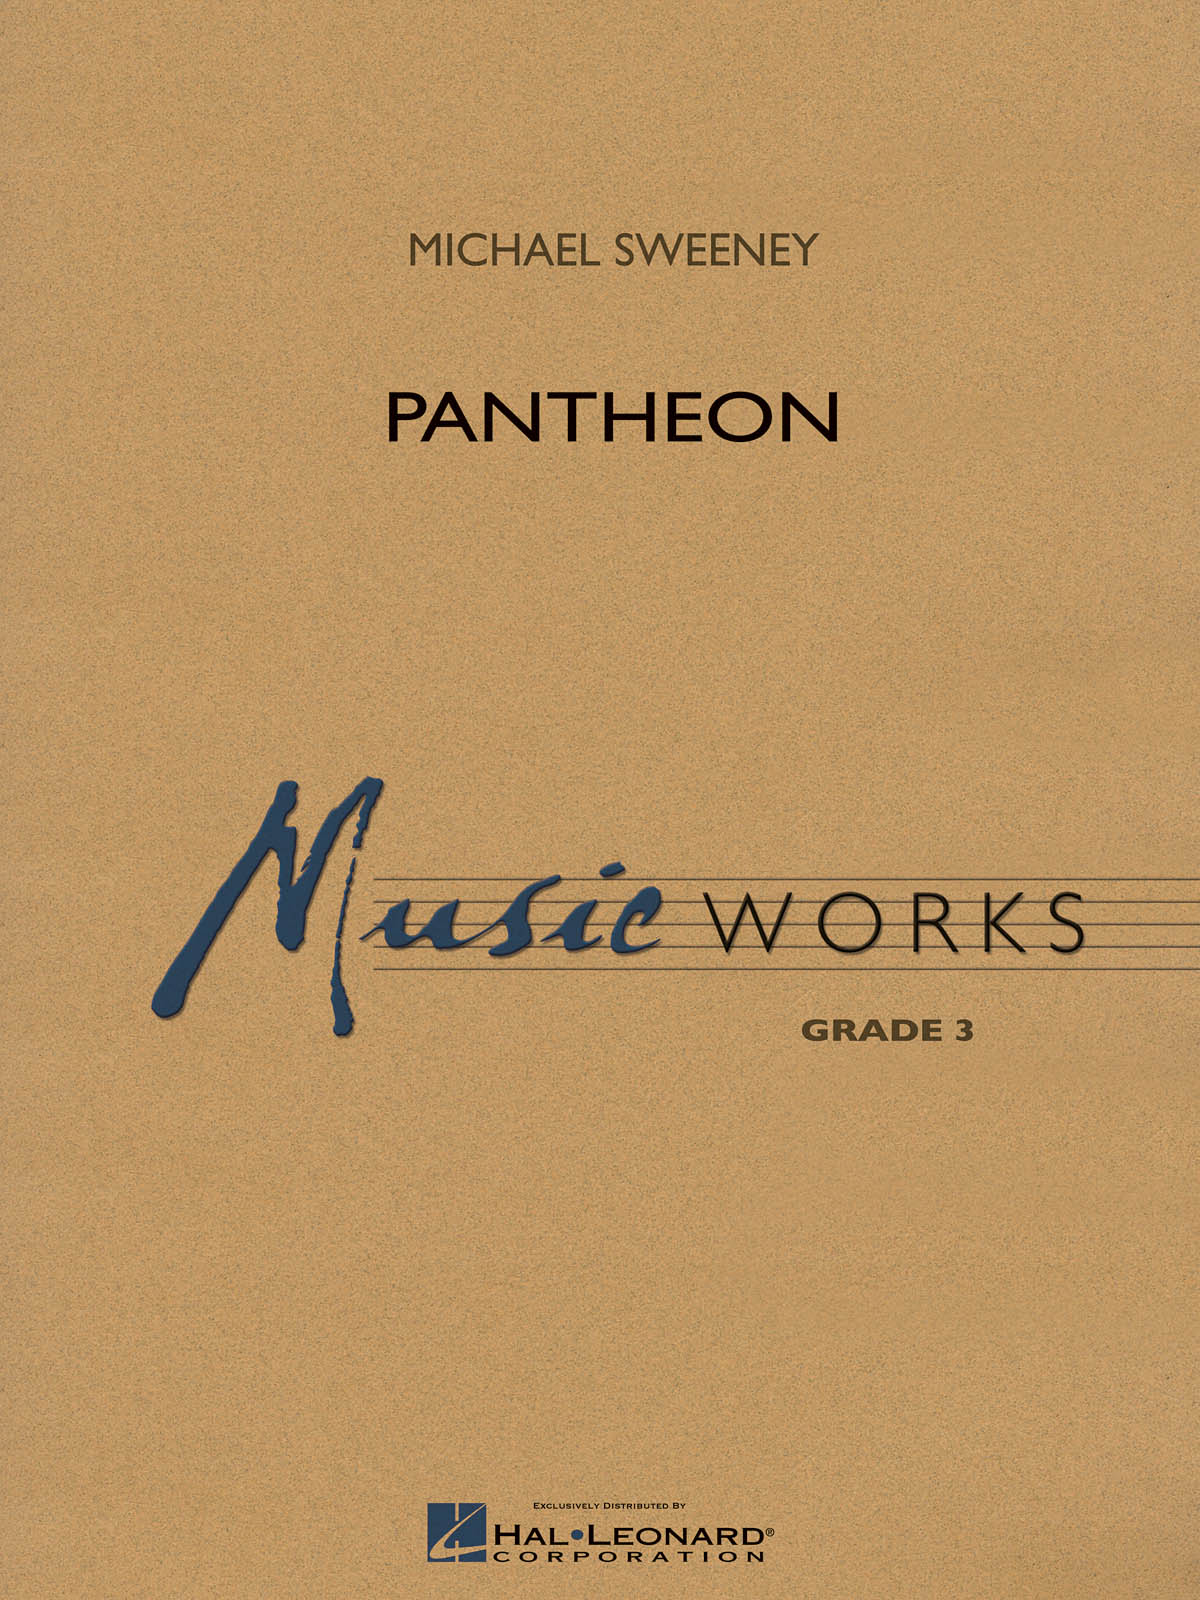 Michael Sweeney: Pantheon